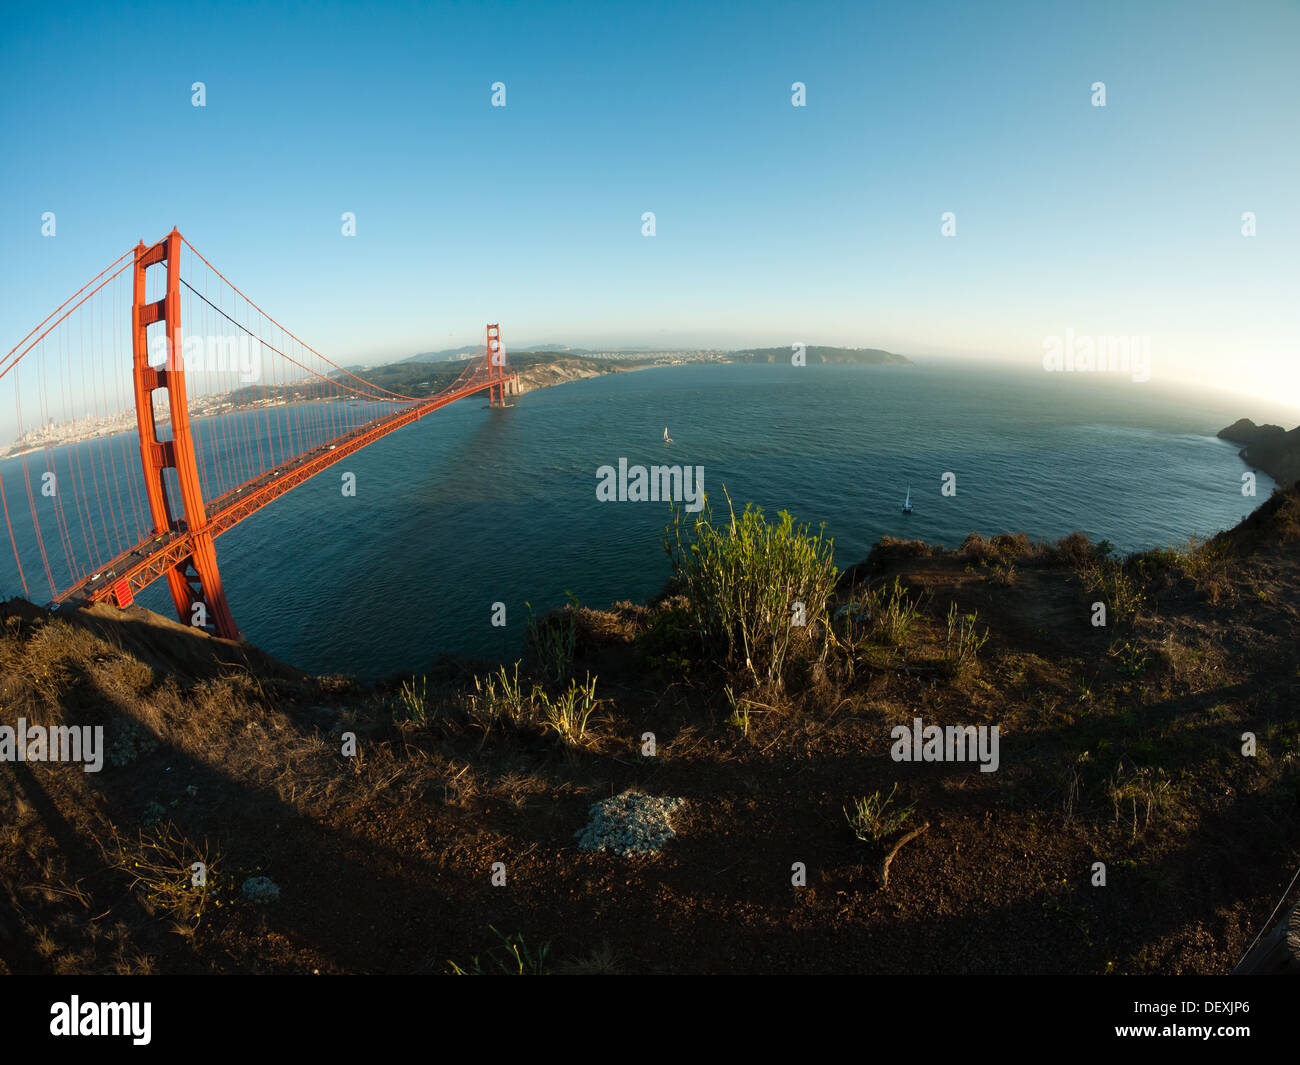 Ein breites, fisheye Blick auf die Golden Gate Bridge und die Marin Headlands von Marin Land, Kalifornien gesehen. Stockfoto